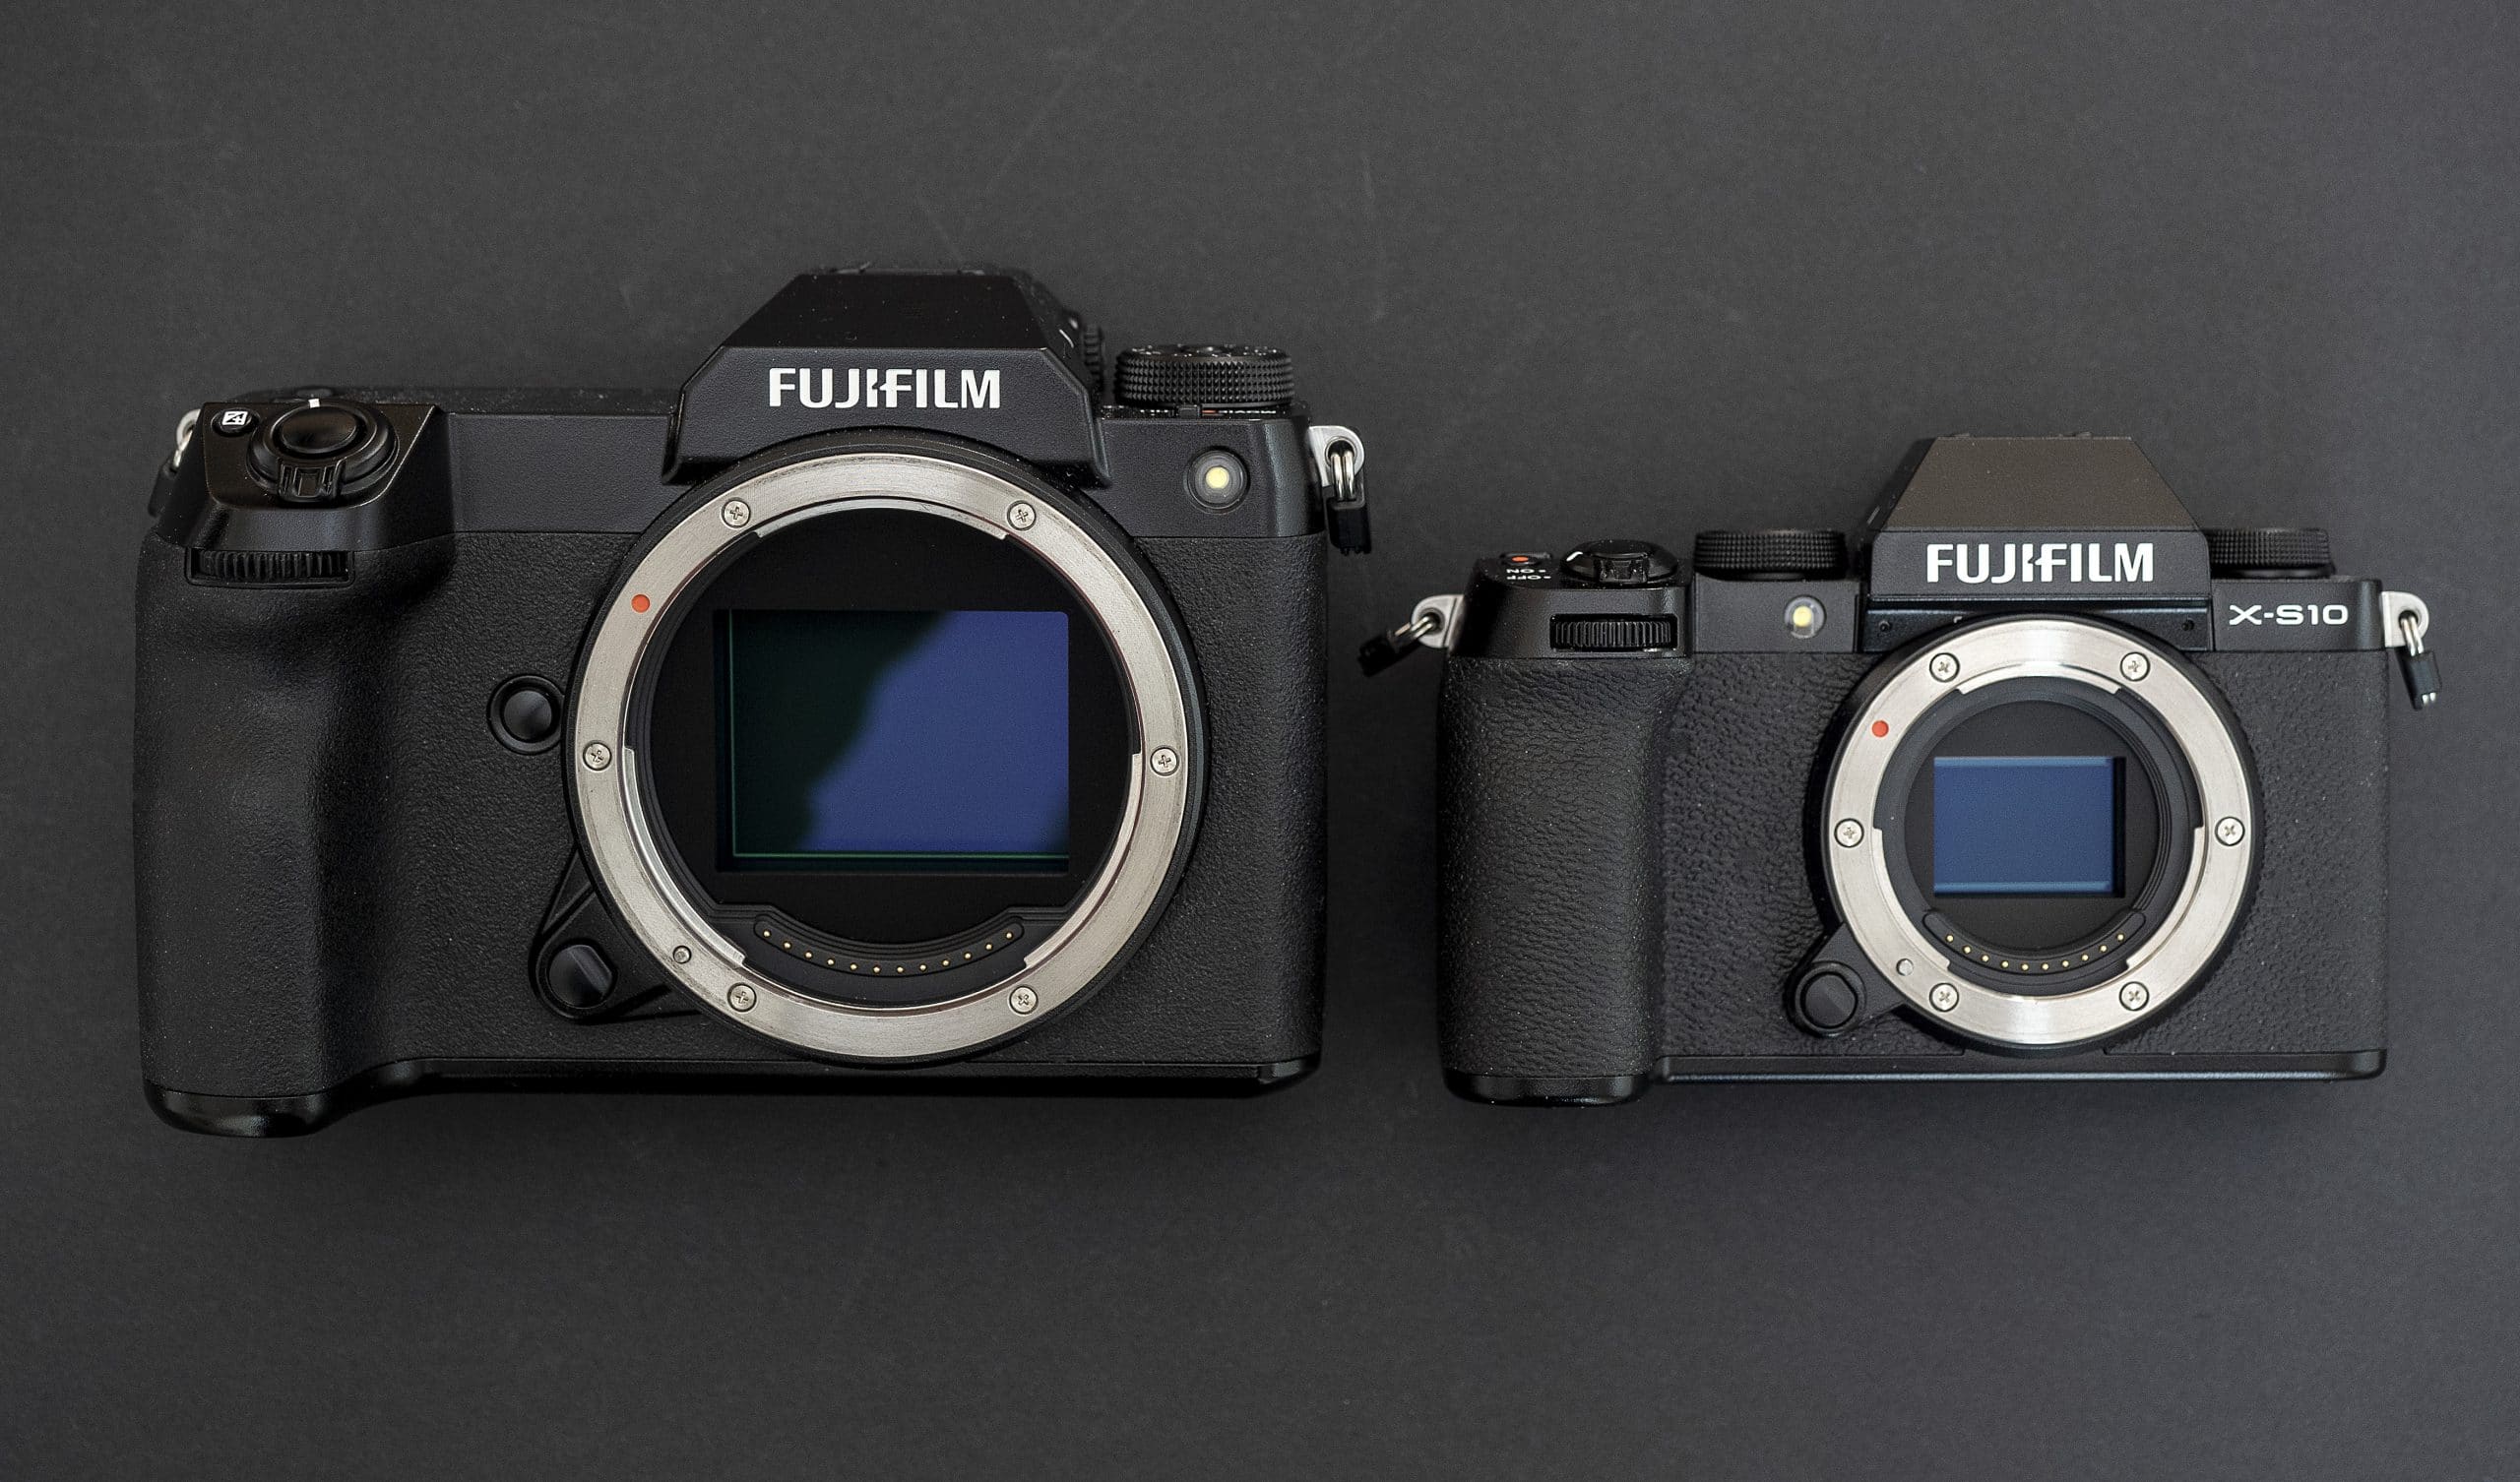 Chưa biết nên chọn máy ảnh Fujifilm nào phù hợp? Đây sẽ là lời khuyên dành cho bạn